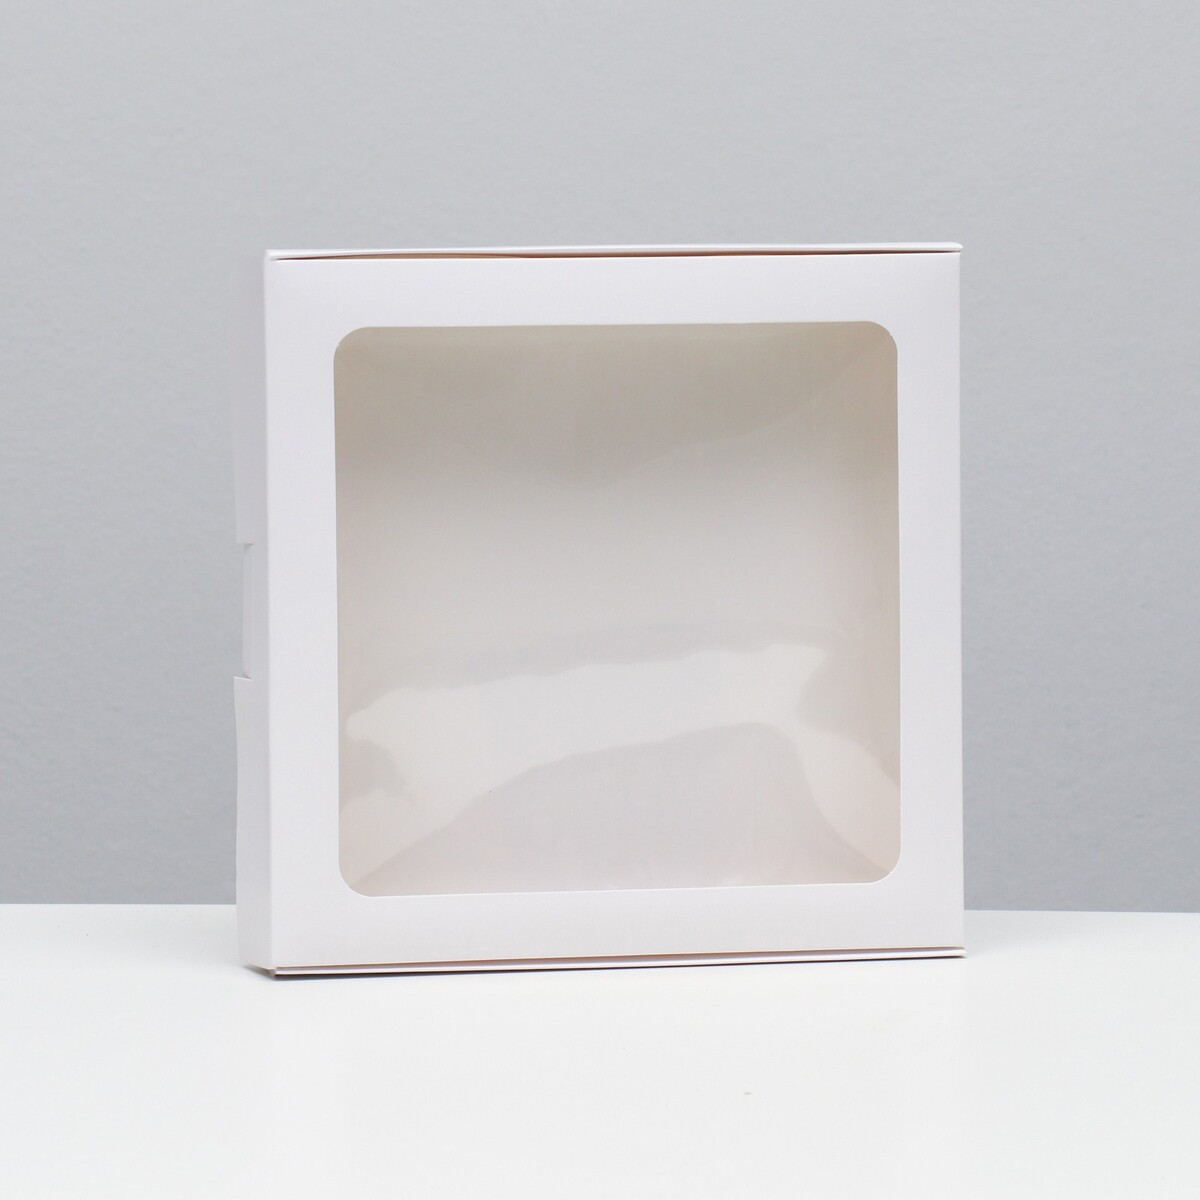 Коробка самосборная, белая, 21 х 21 х 3 см коробка самосборная белая 13 х 13 х 3 см